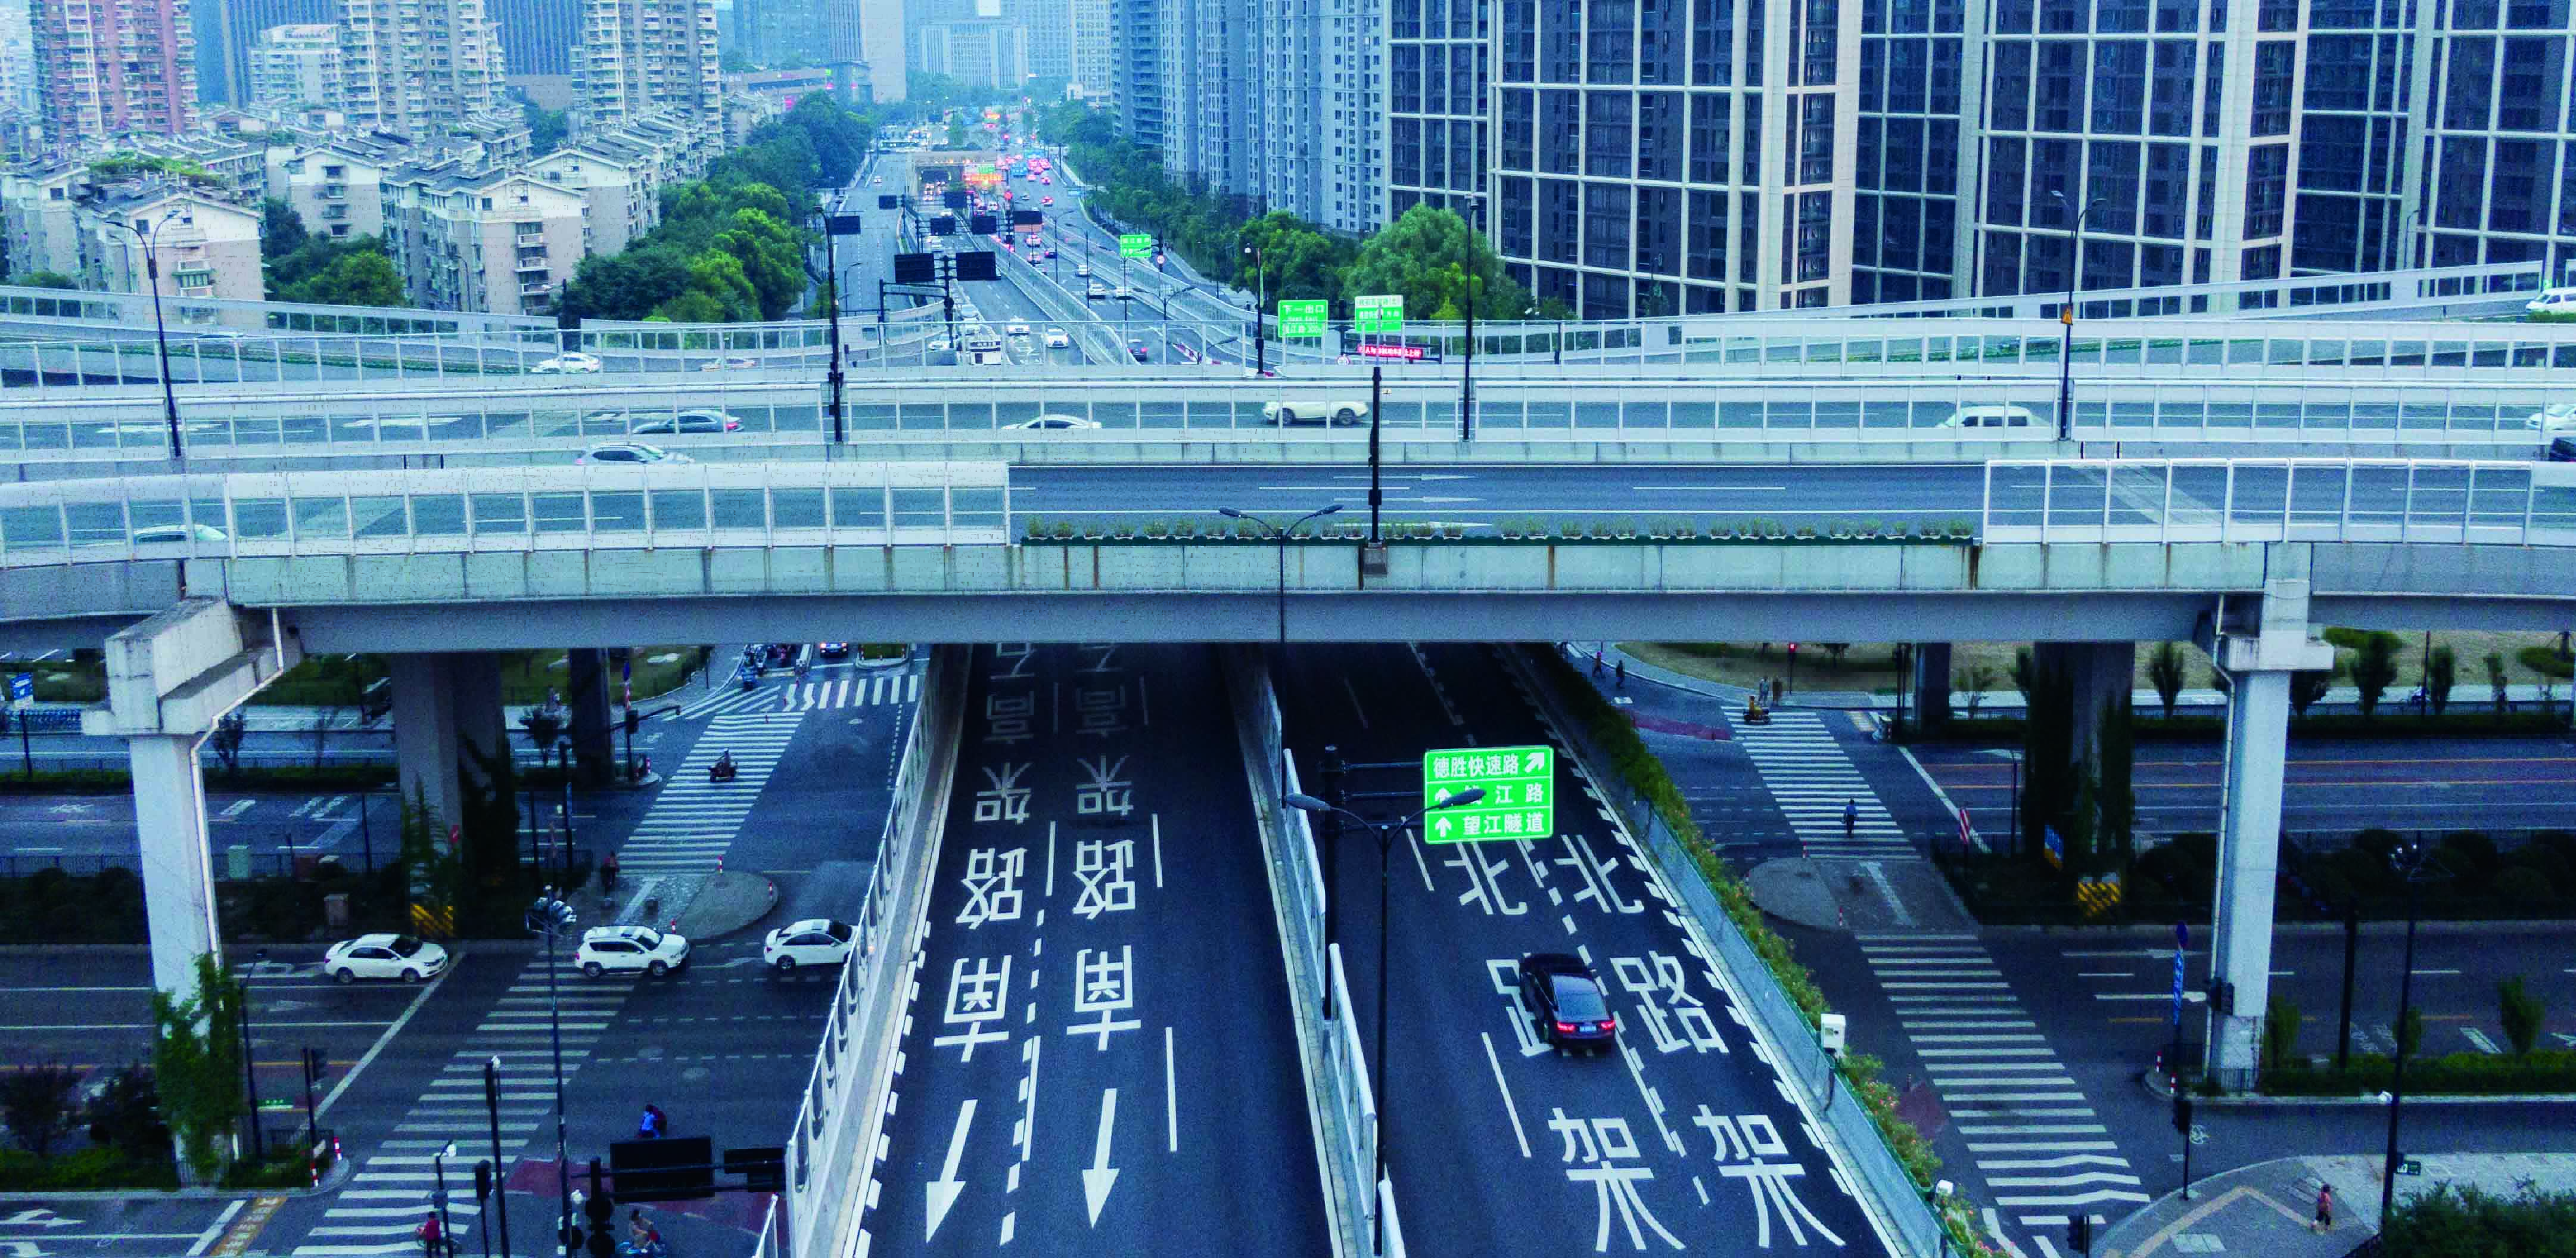 【杭州城市快速路系列】中河高架路 - 哔哩哔哩